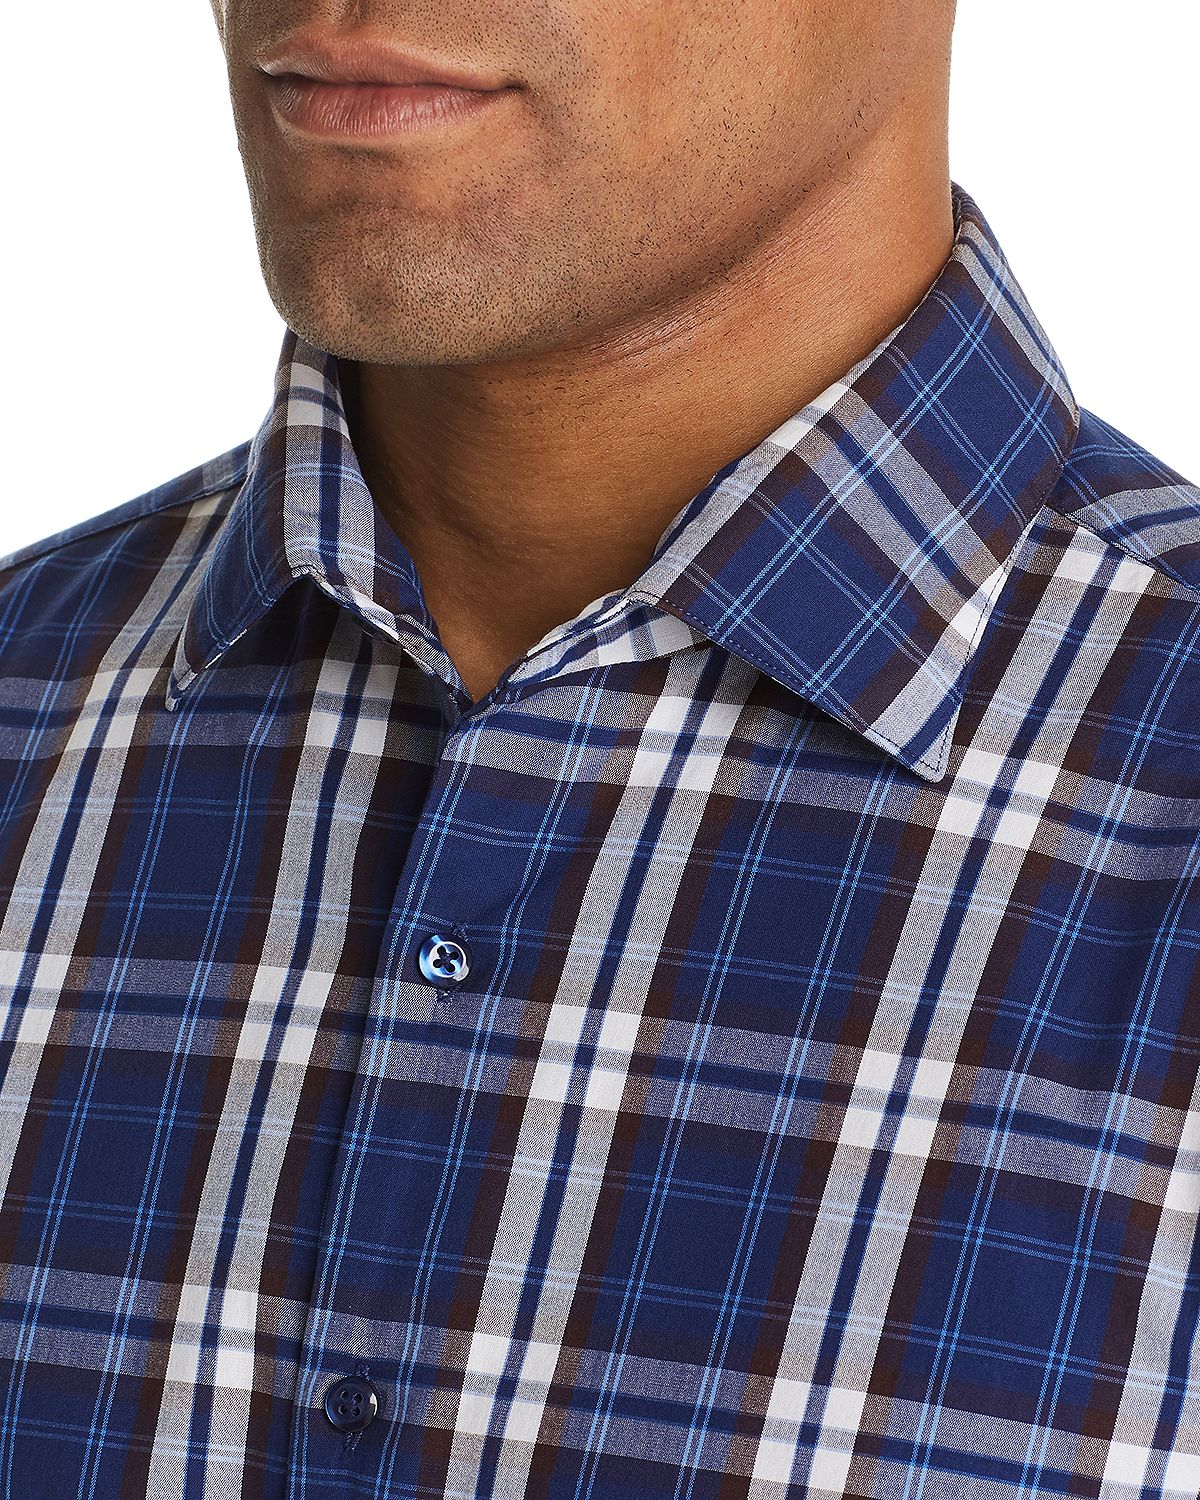 The Men's Store Tri-color Plaid Classic Fit Shirt Navy